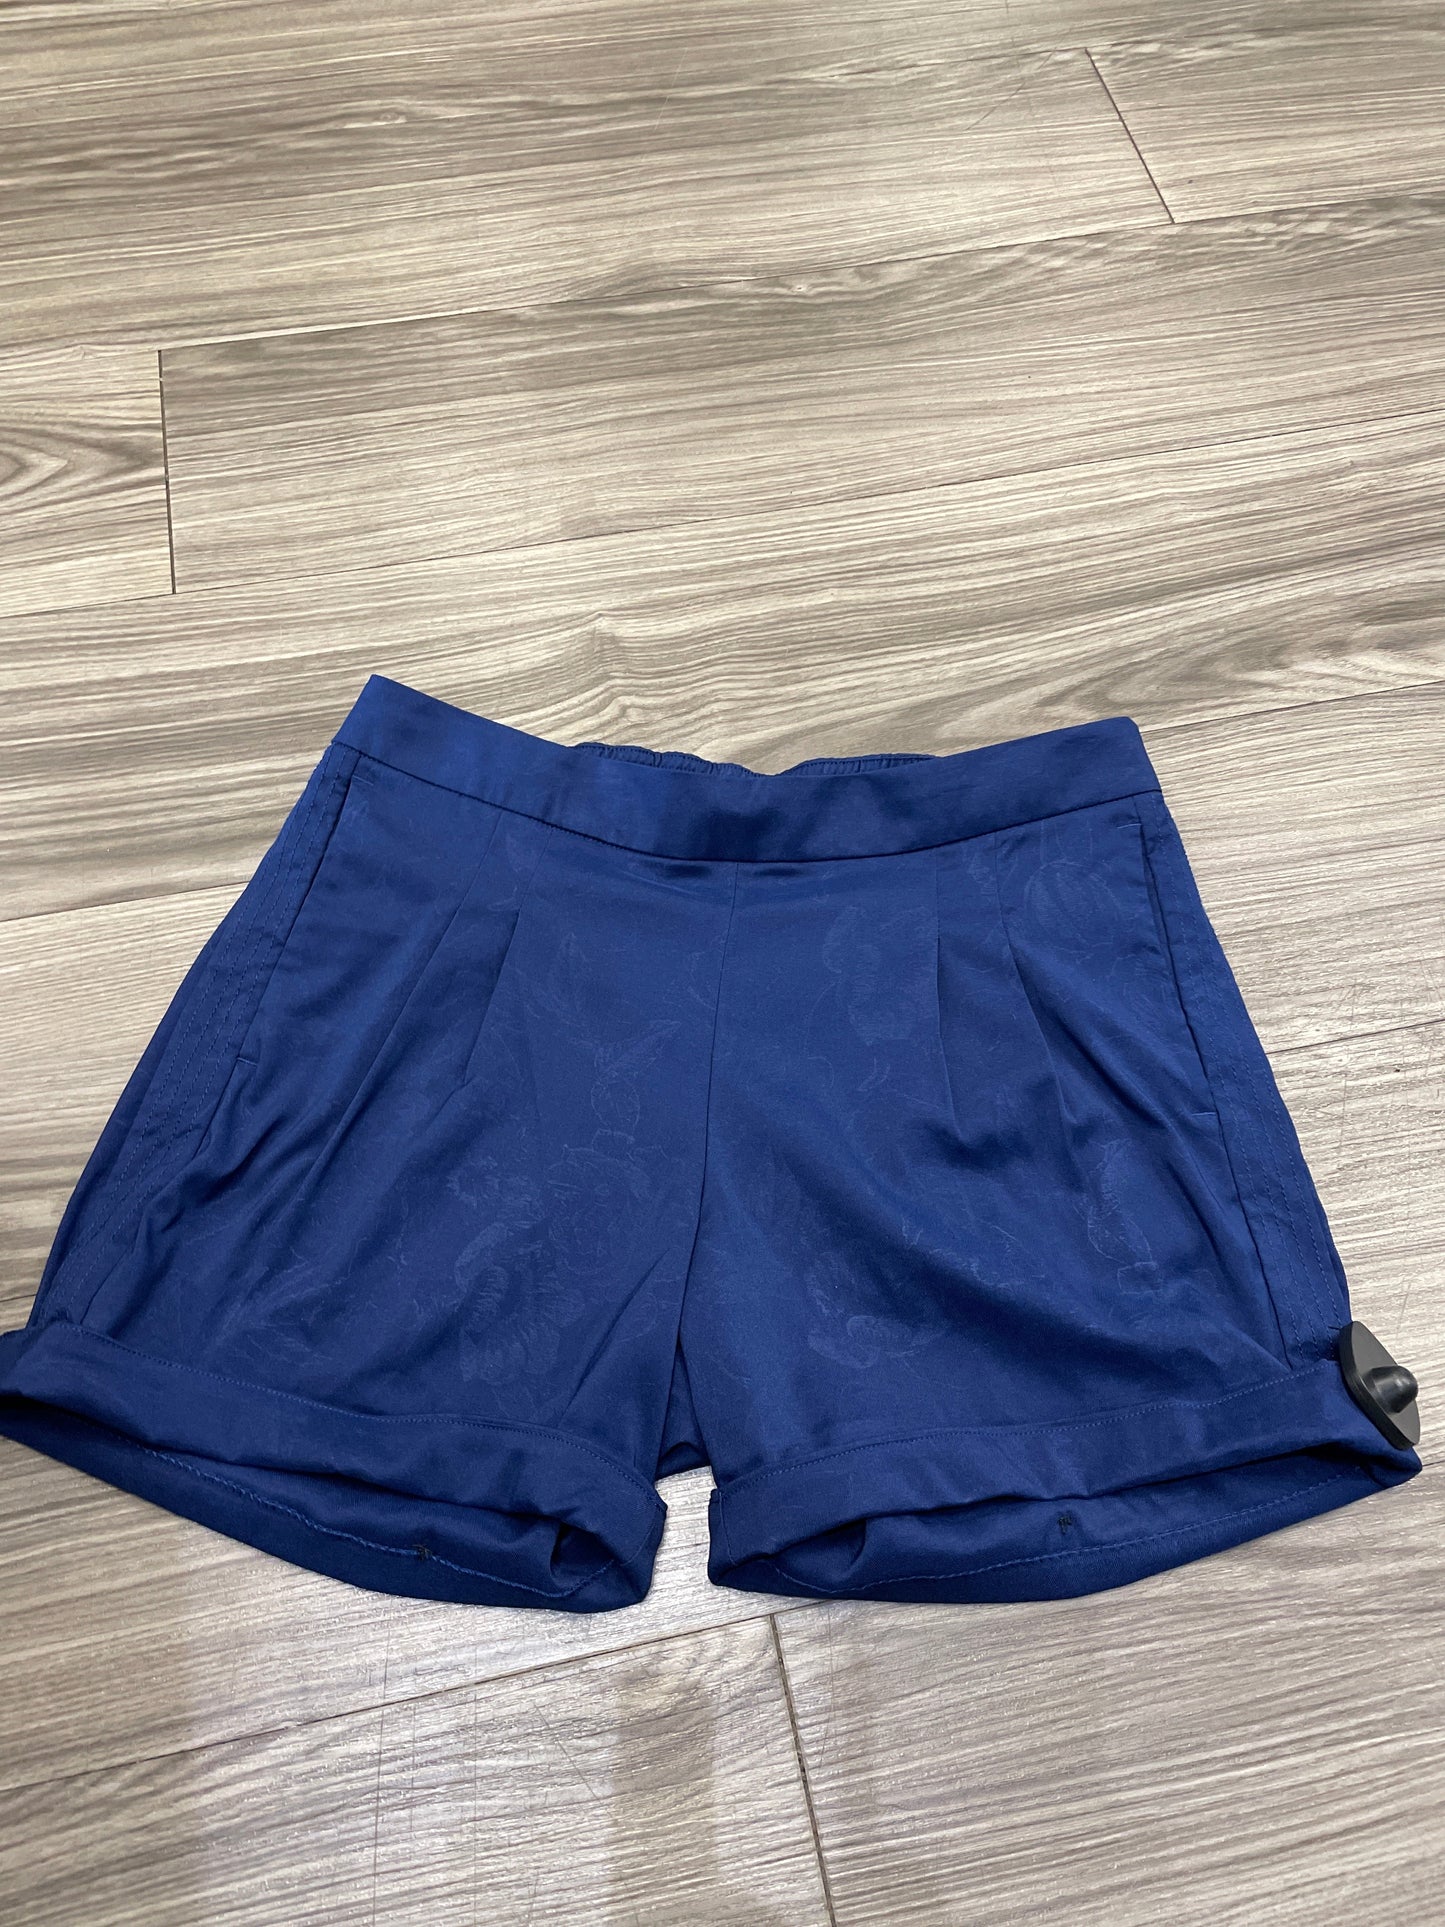 Blue Shorts Nike, Size S